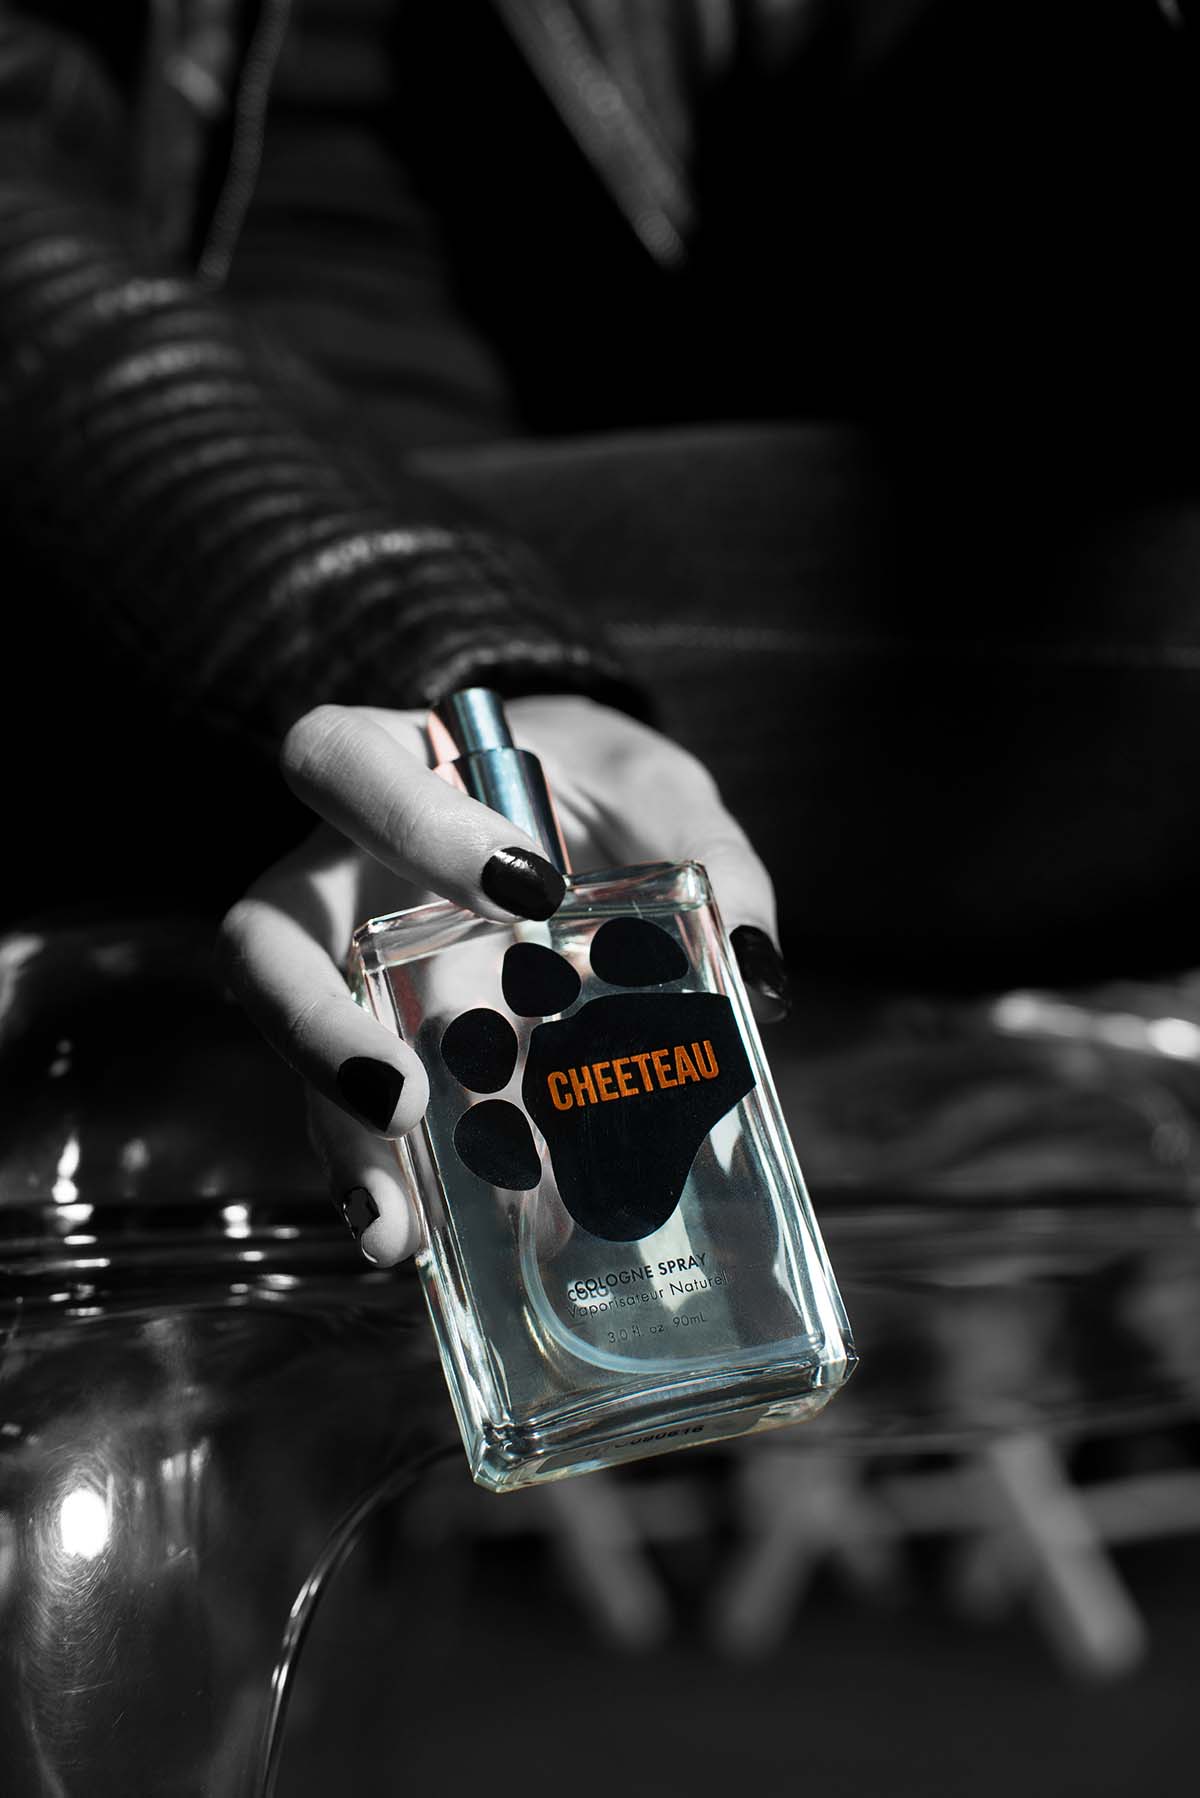 cheeteau-perfume-15-hr